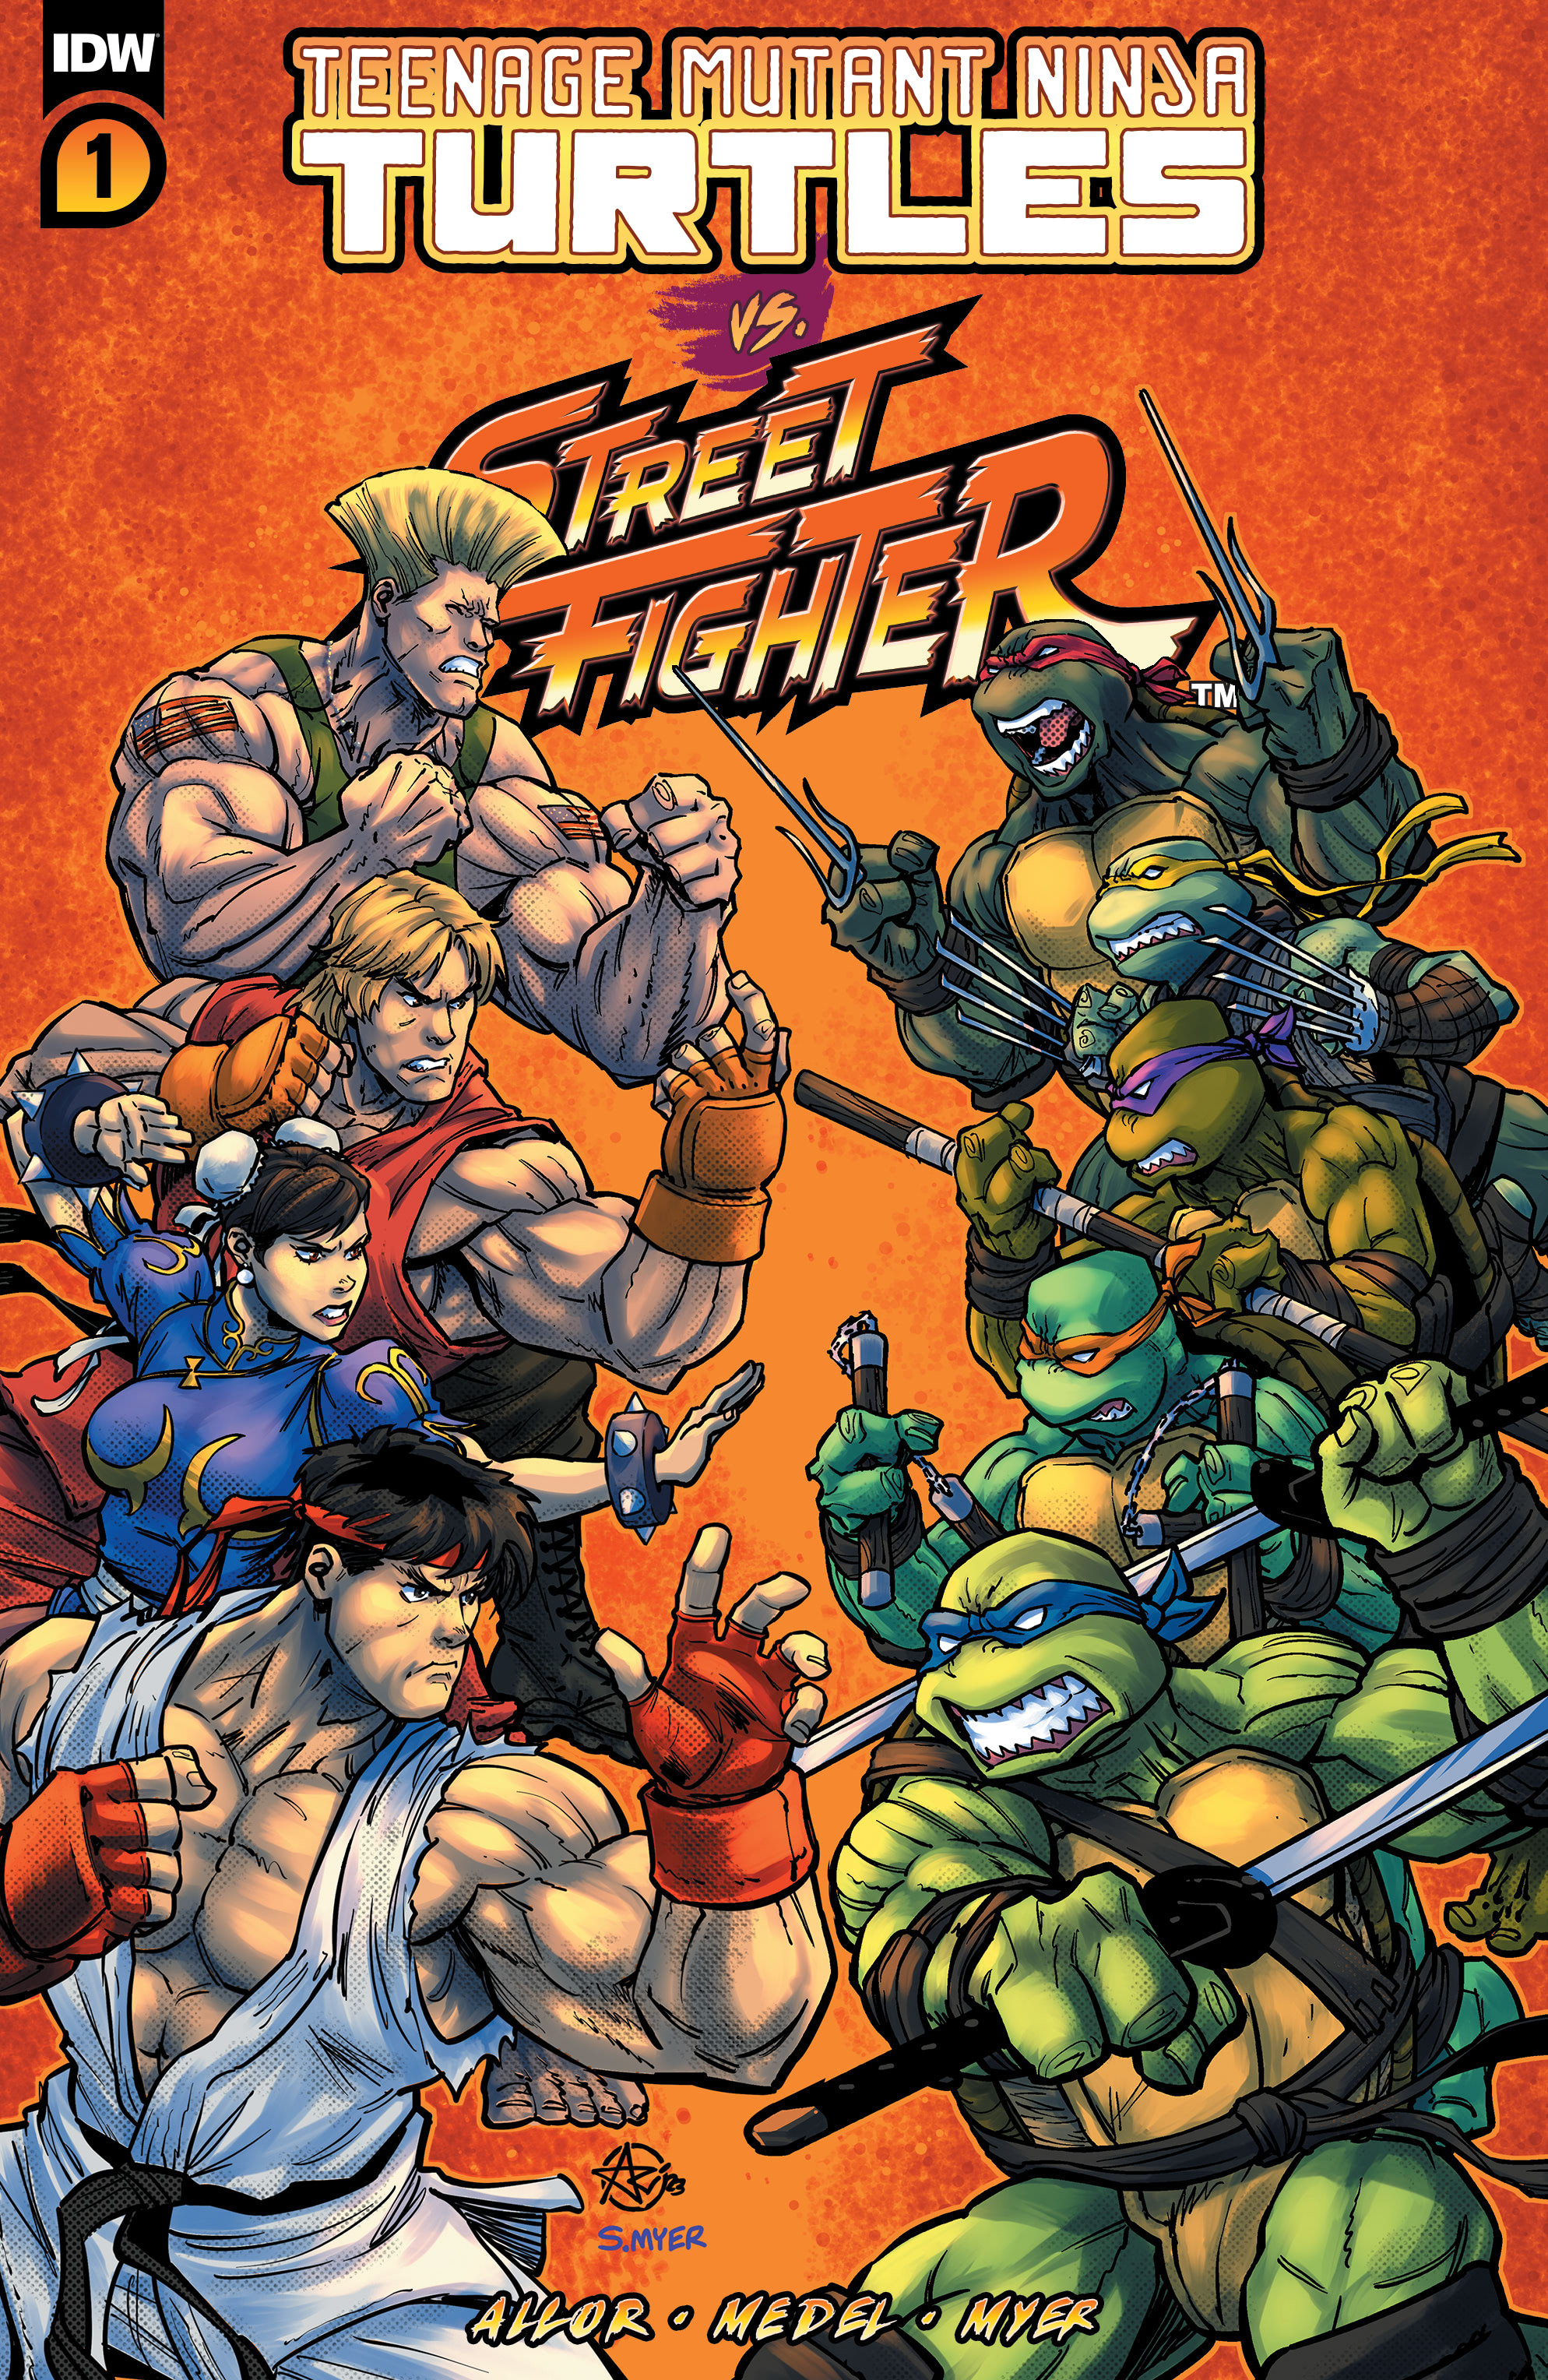 Read online Teenage Mutant Ninja Turtles vs. Street Fighter comic -  Issue #1 - 1